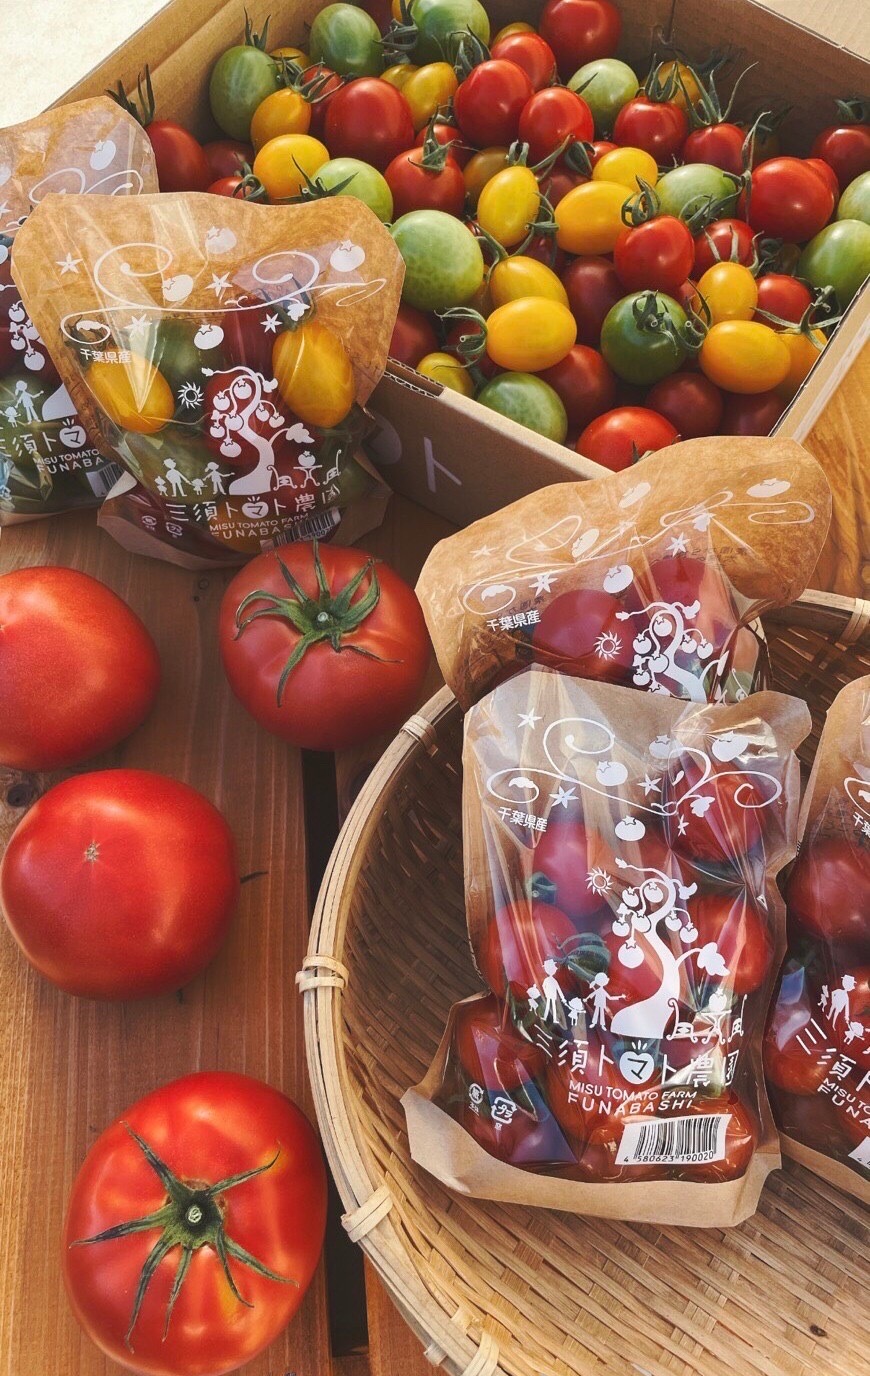 ミシュランシェフも納得★トマト・キュウリ・旬のお野菜セット 旬のトマト3種&きゅうり2袋(3本入り)&旬の野菜